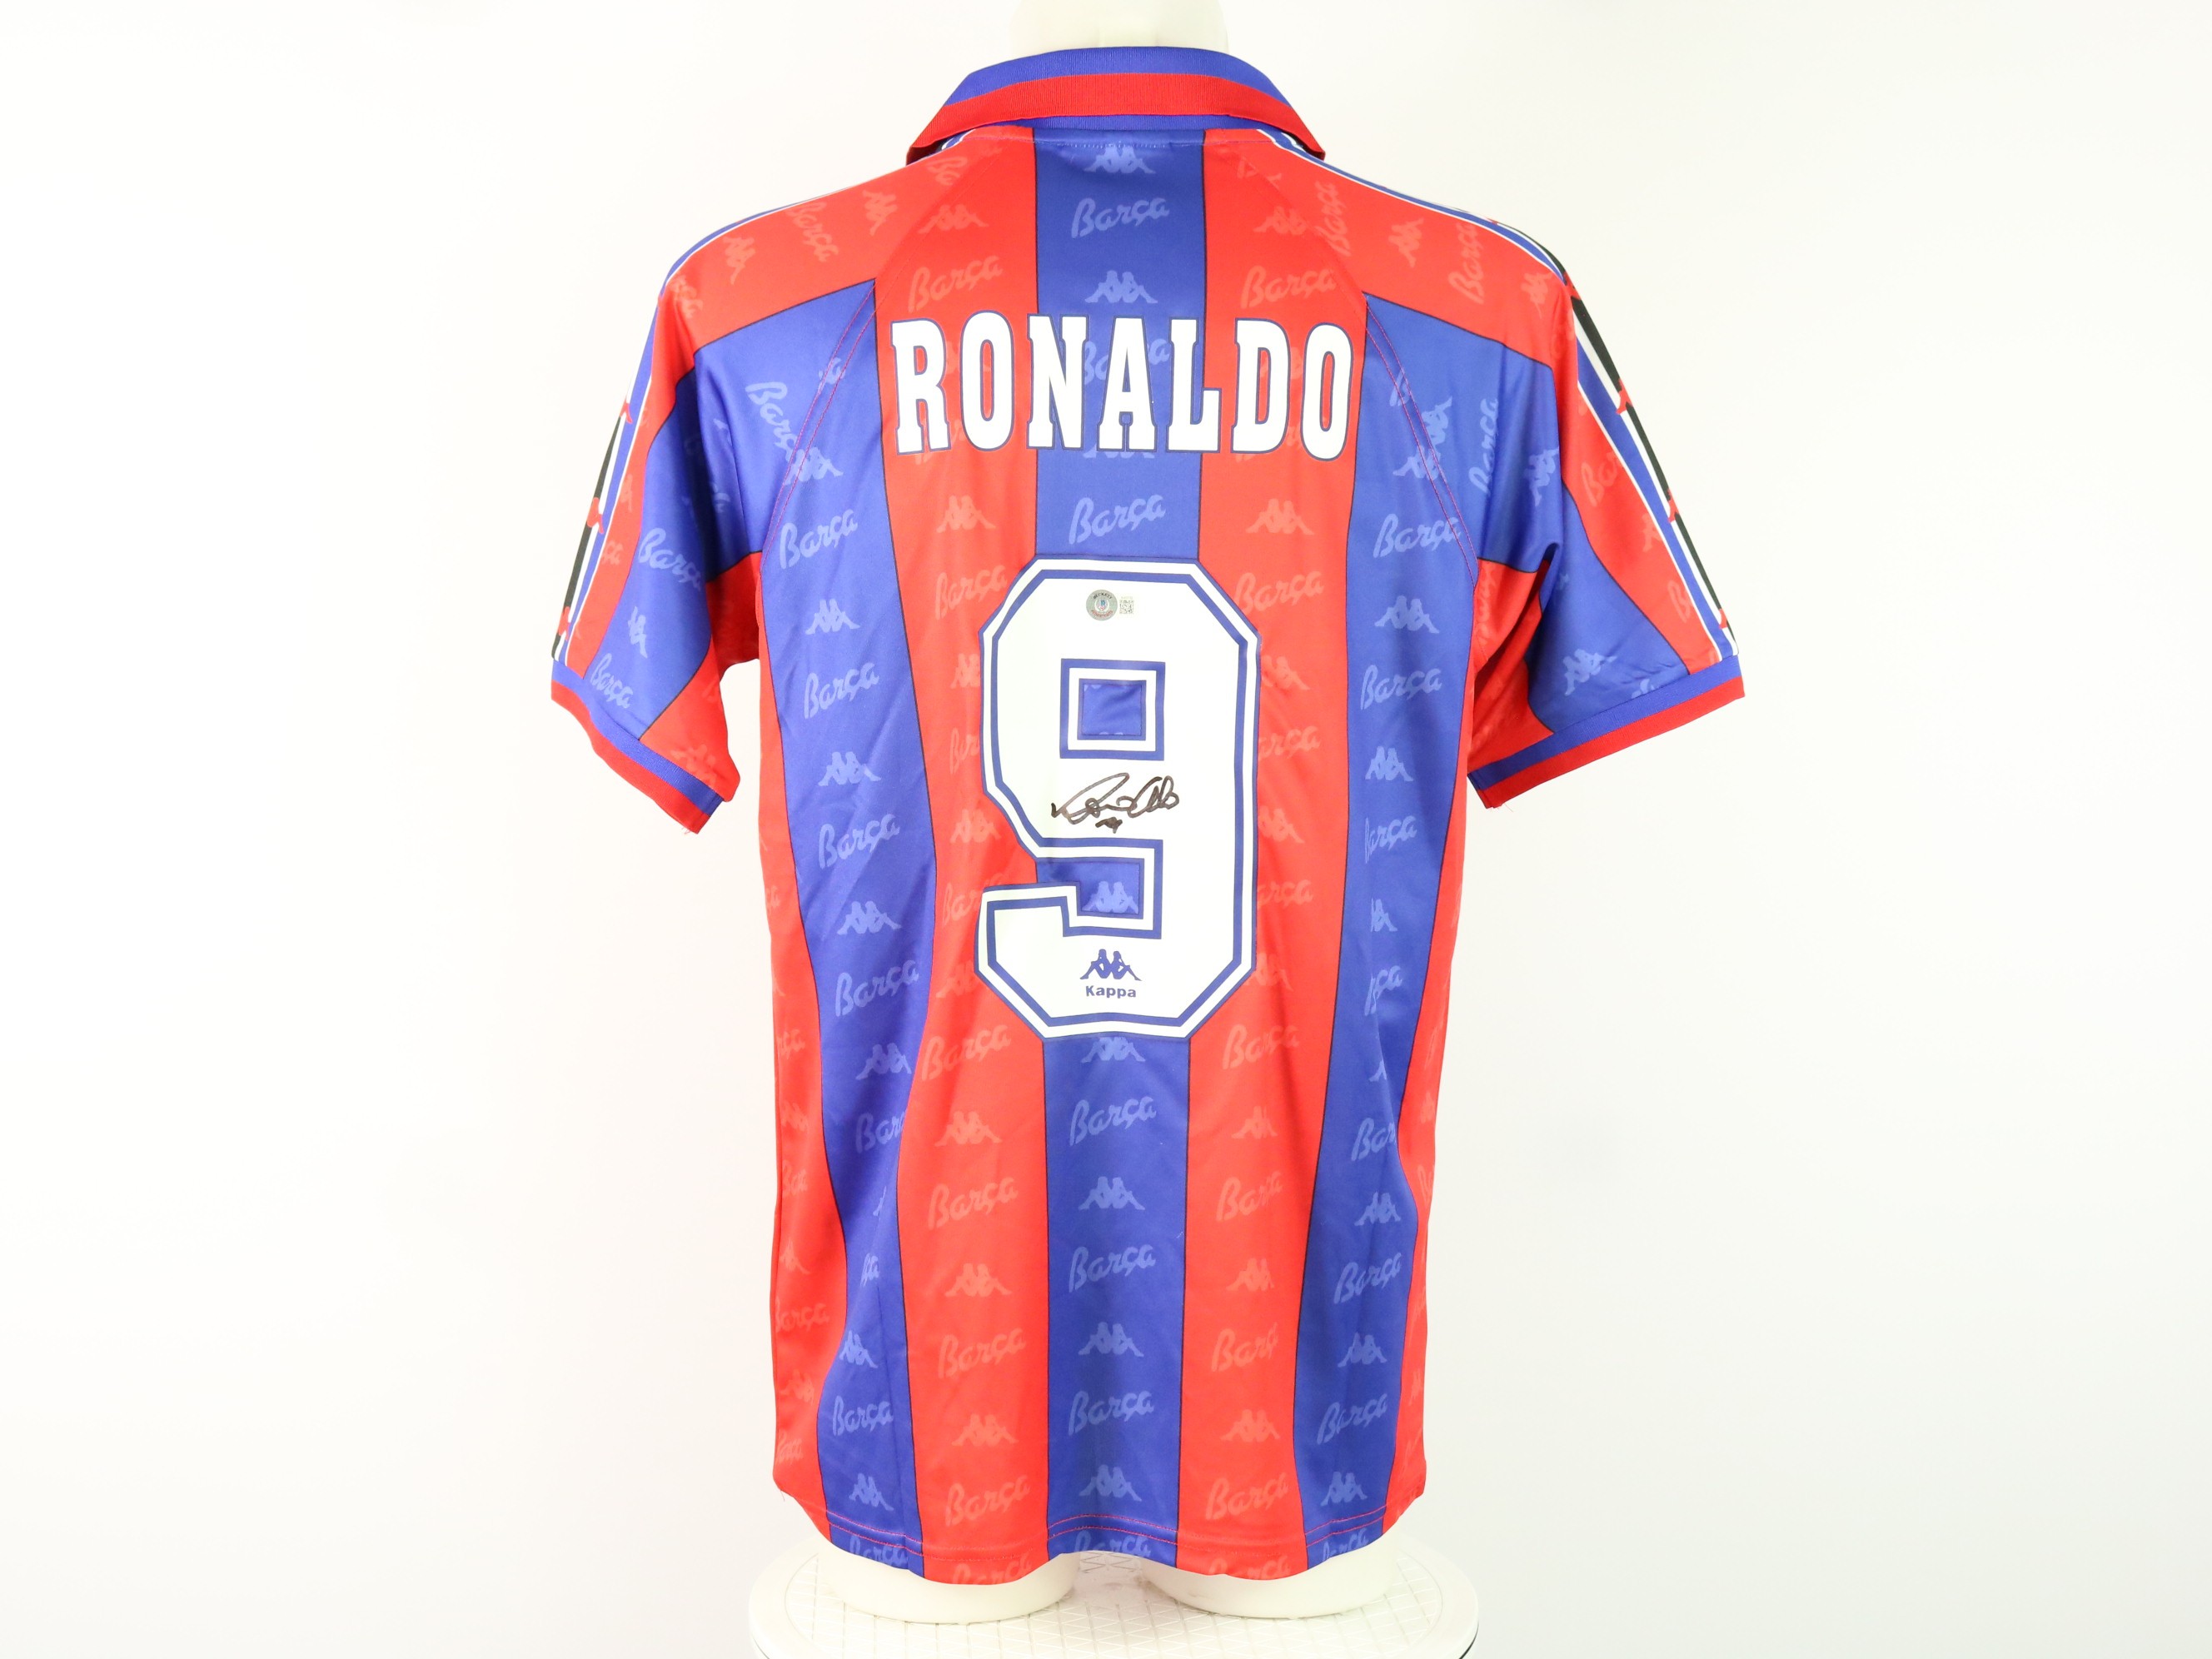 Maglia ufficiale Ronaldo Barcellona, 1996/97 - Autografata - CharityStars